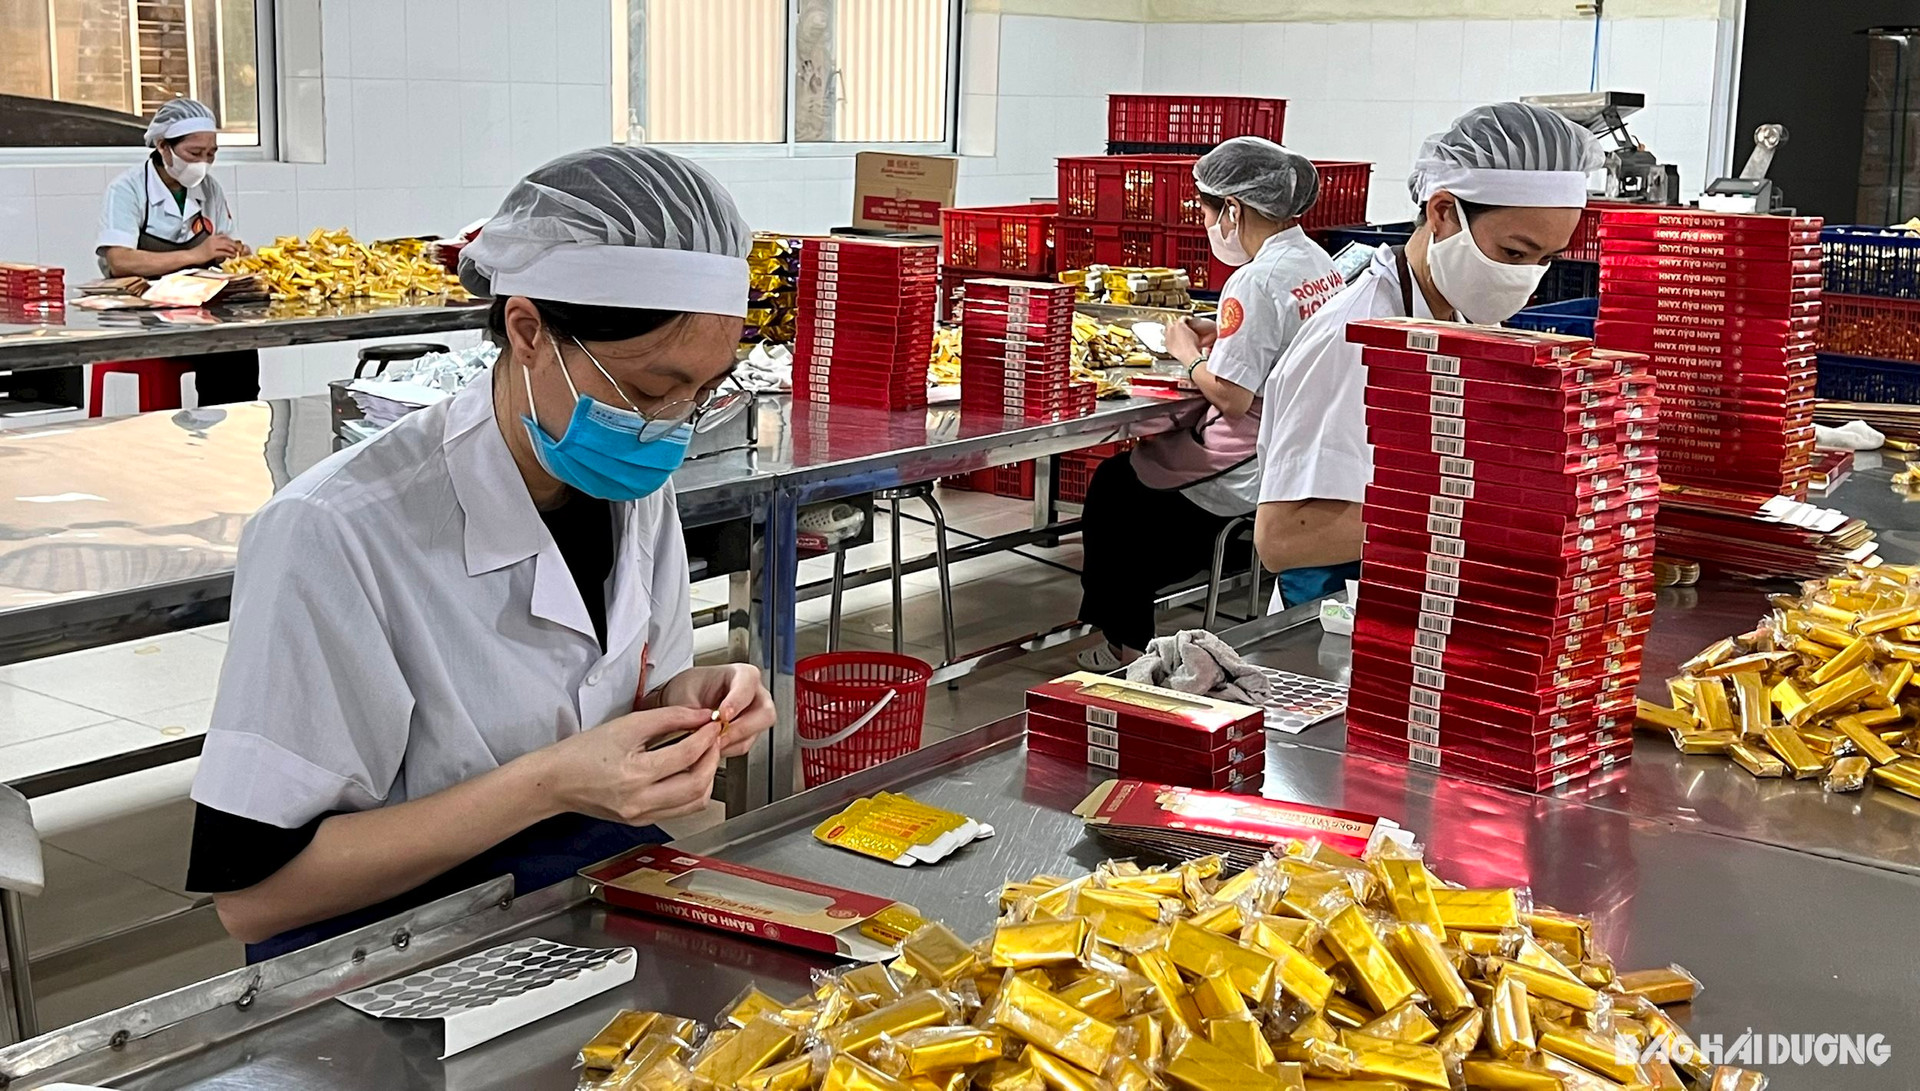 ảnh báo in: 9 sản phẩm bánh đậu xanh của Công ty CP Hoàng Giang (TP Hải Dương) được bảo hộ quyền sở hữu trí tuệ tại thị trường trong nước và Nhật Bản